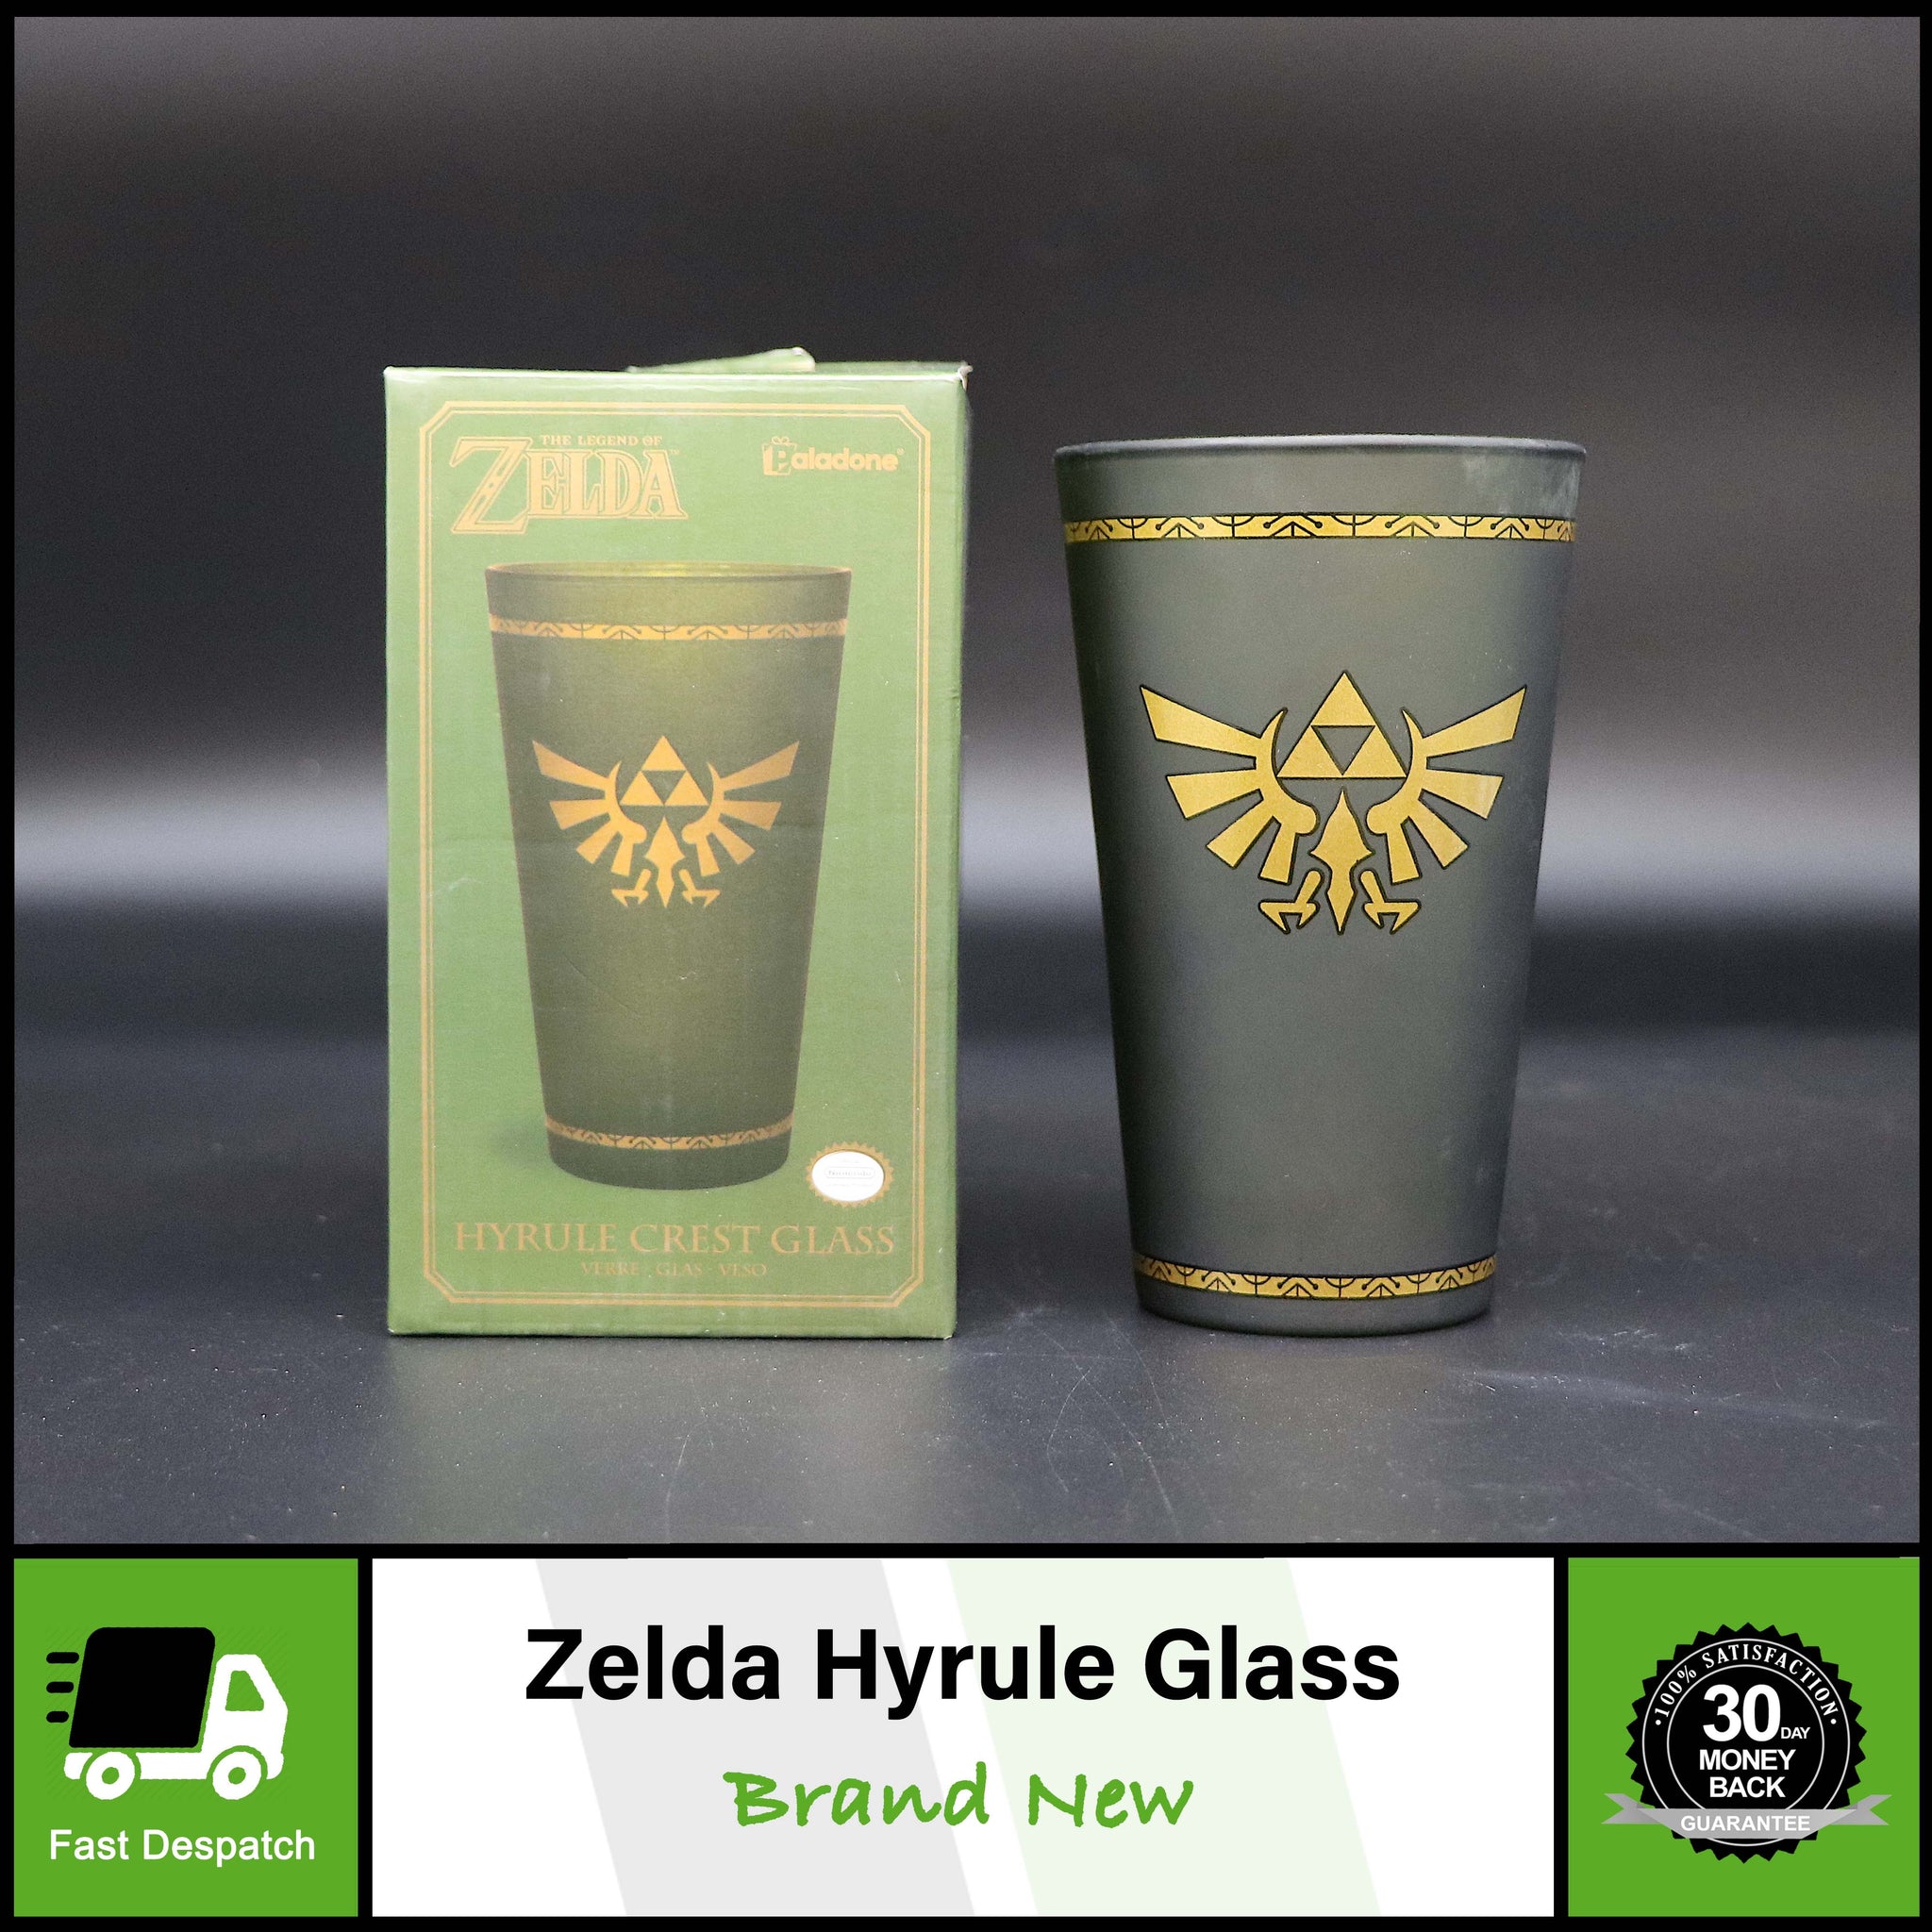 Legend Of Zelda Hyrule Crest Glass Mug Cup | Official Nintendo | Brand New Boxed